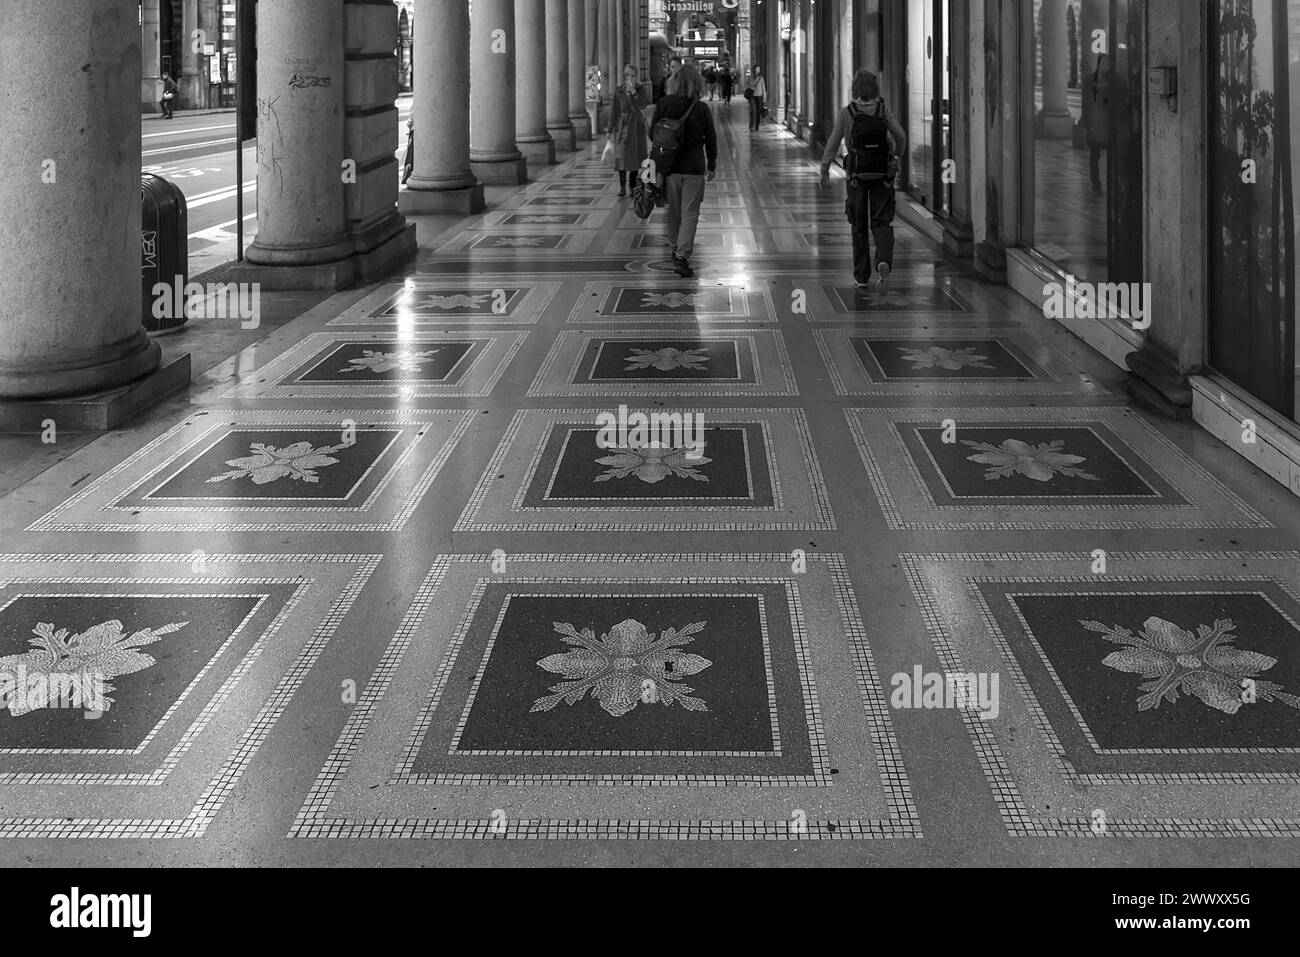 Sol en mosaïque dans les arcades historiques de l'ancien Palazzo de la navigation générale italienne, construit en 1908, aujourd'hui siège de la Ligurie régionale Banque D'Images